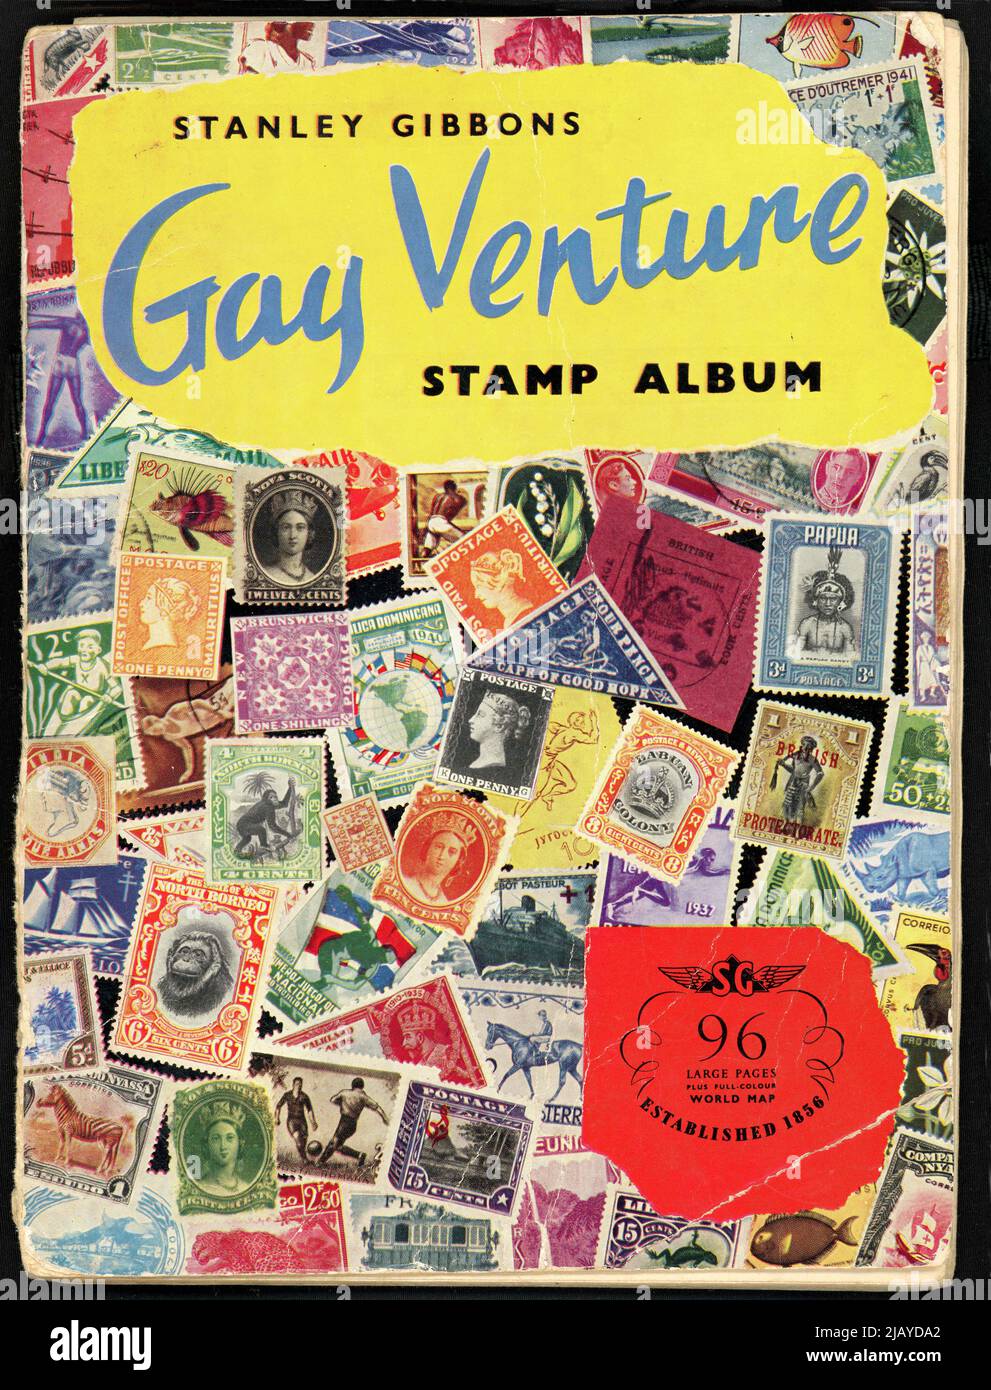 Álbum de sello Gay Venture, segunda edición, alrededor de 1960 Foto de stock